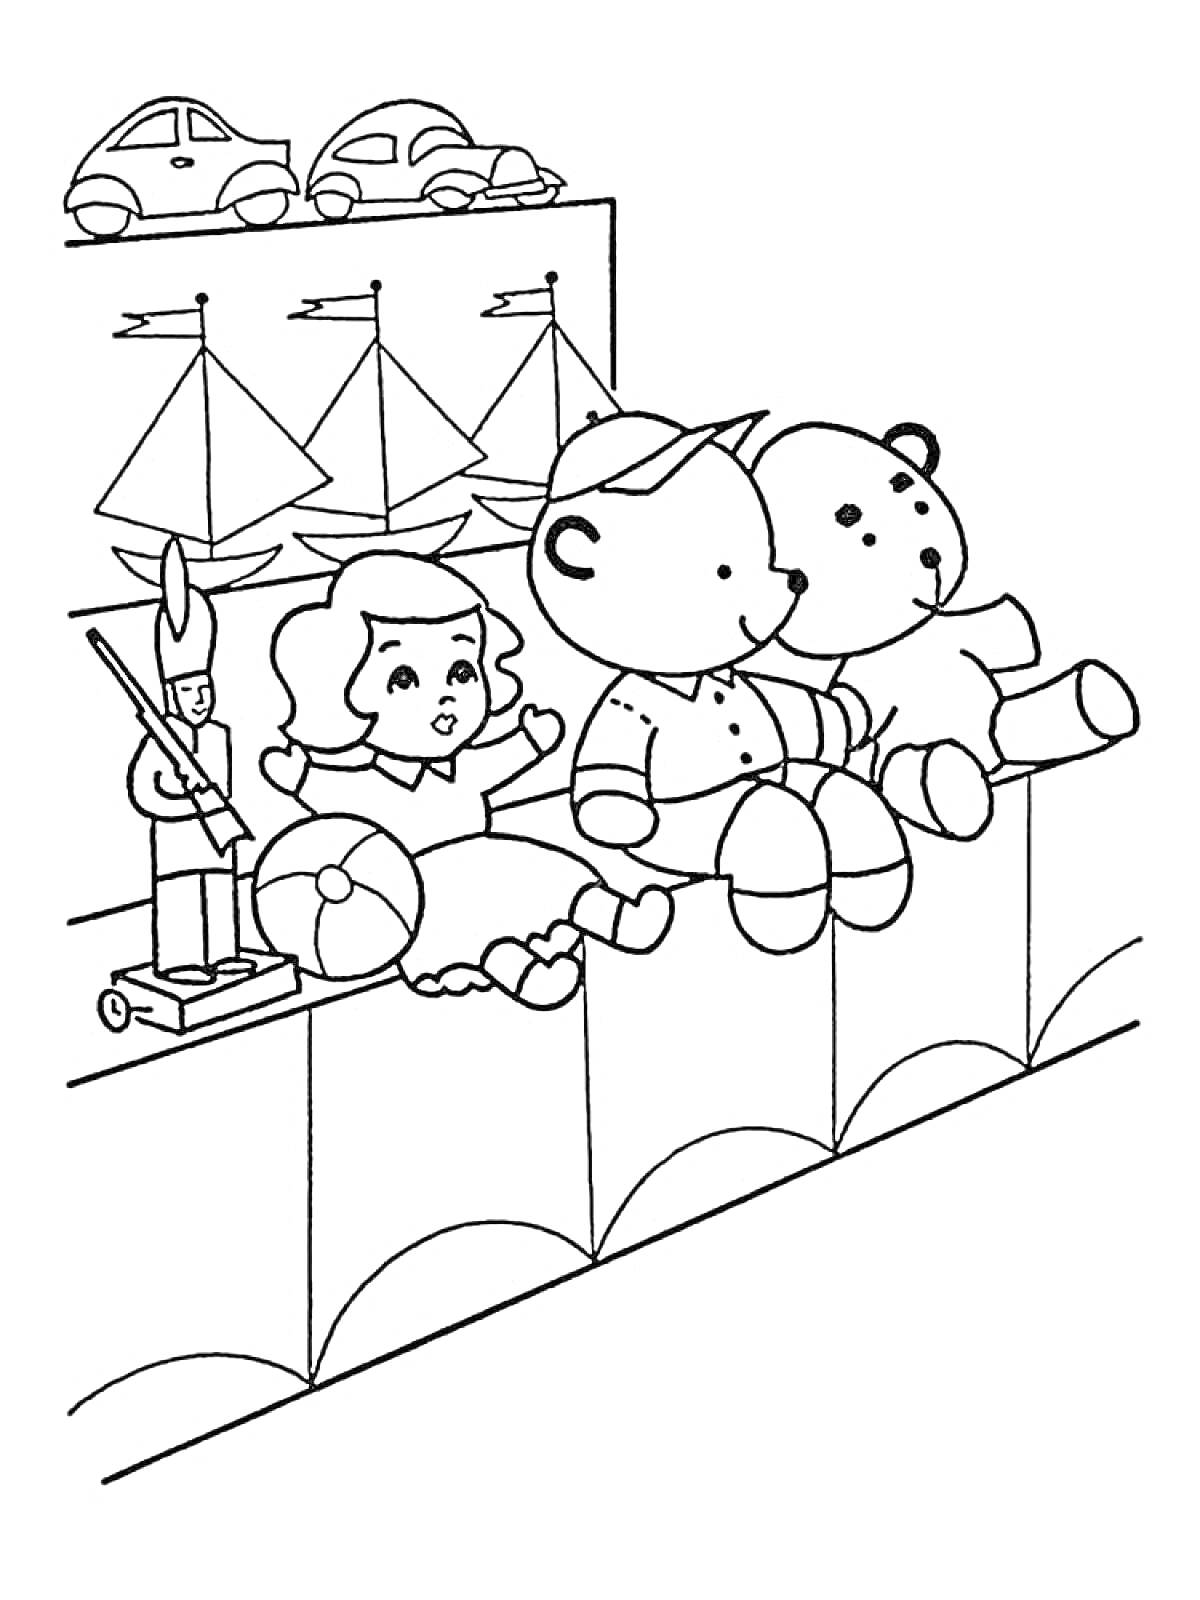 Раскраска Машинки, парусники, солдатик, кукла и два мишки в магазине игрушек